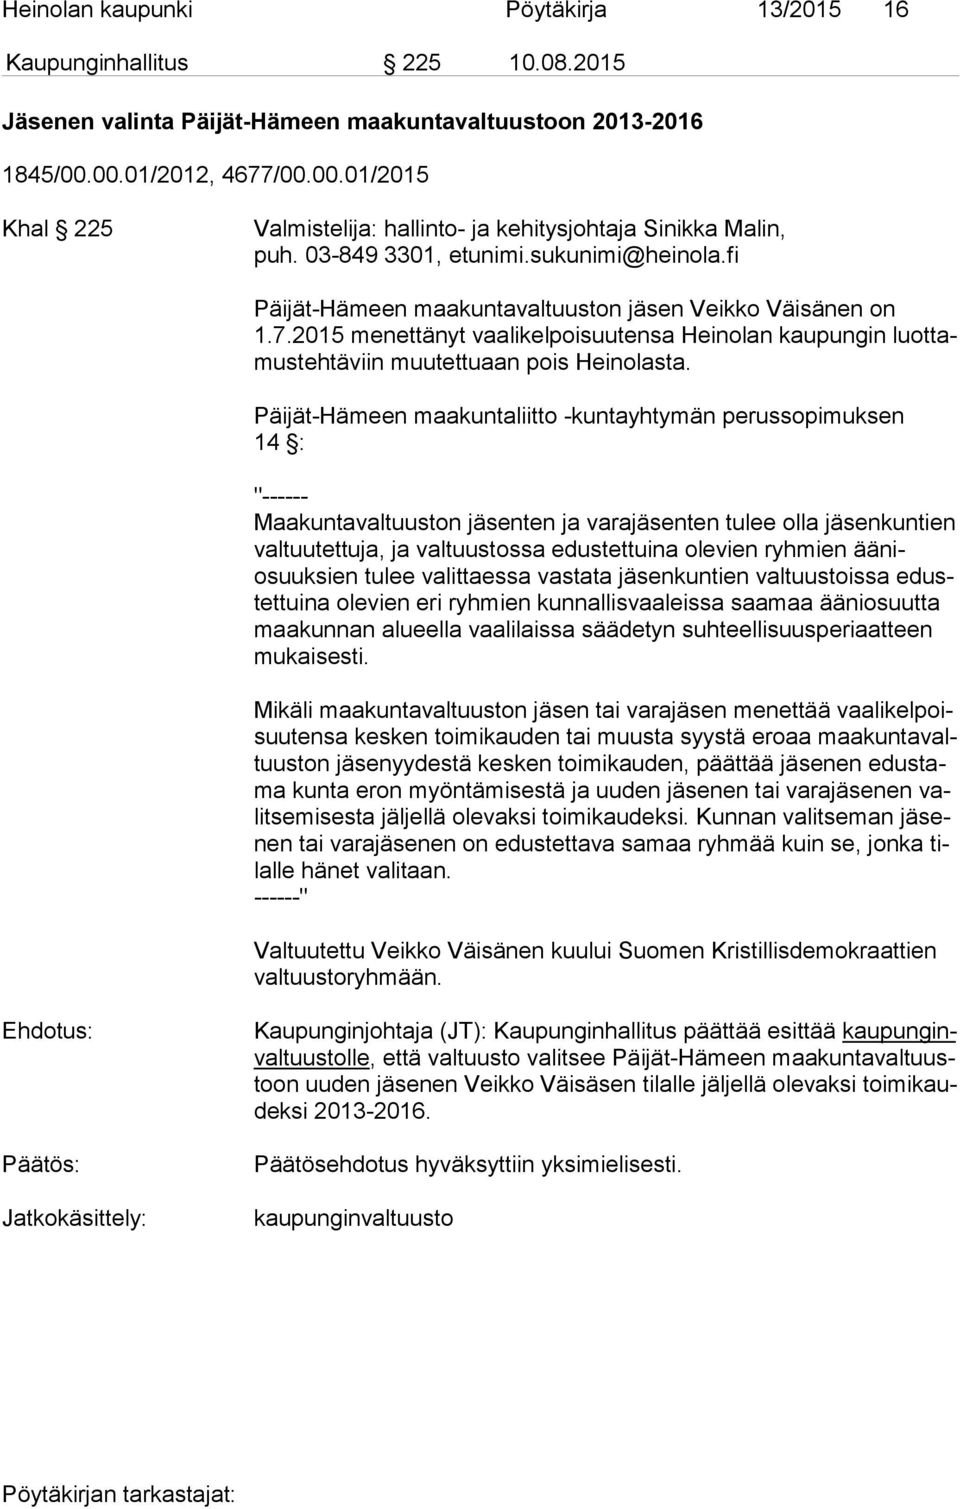 fi Päijät-Hämeen maakuntavaltuuston jäsen Veikko Väisänen on 1.7.2015 menettänyt vaalikelpoisuutensa Heinolan kaupungin luot tamus teh tä viin muutettuaan pois Heinolasta.